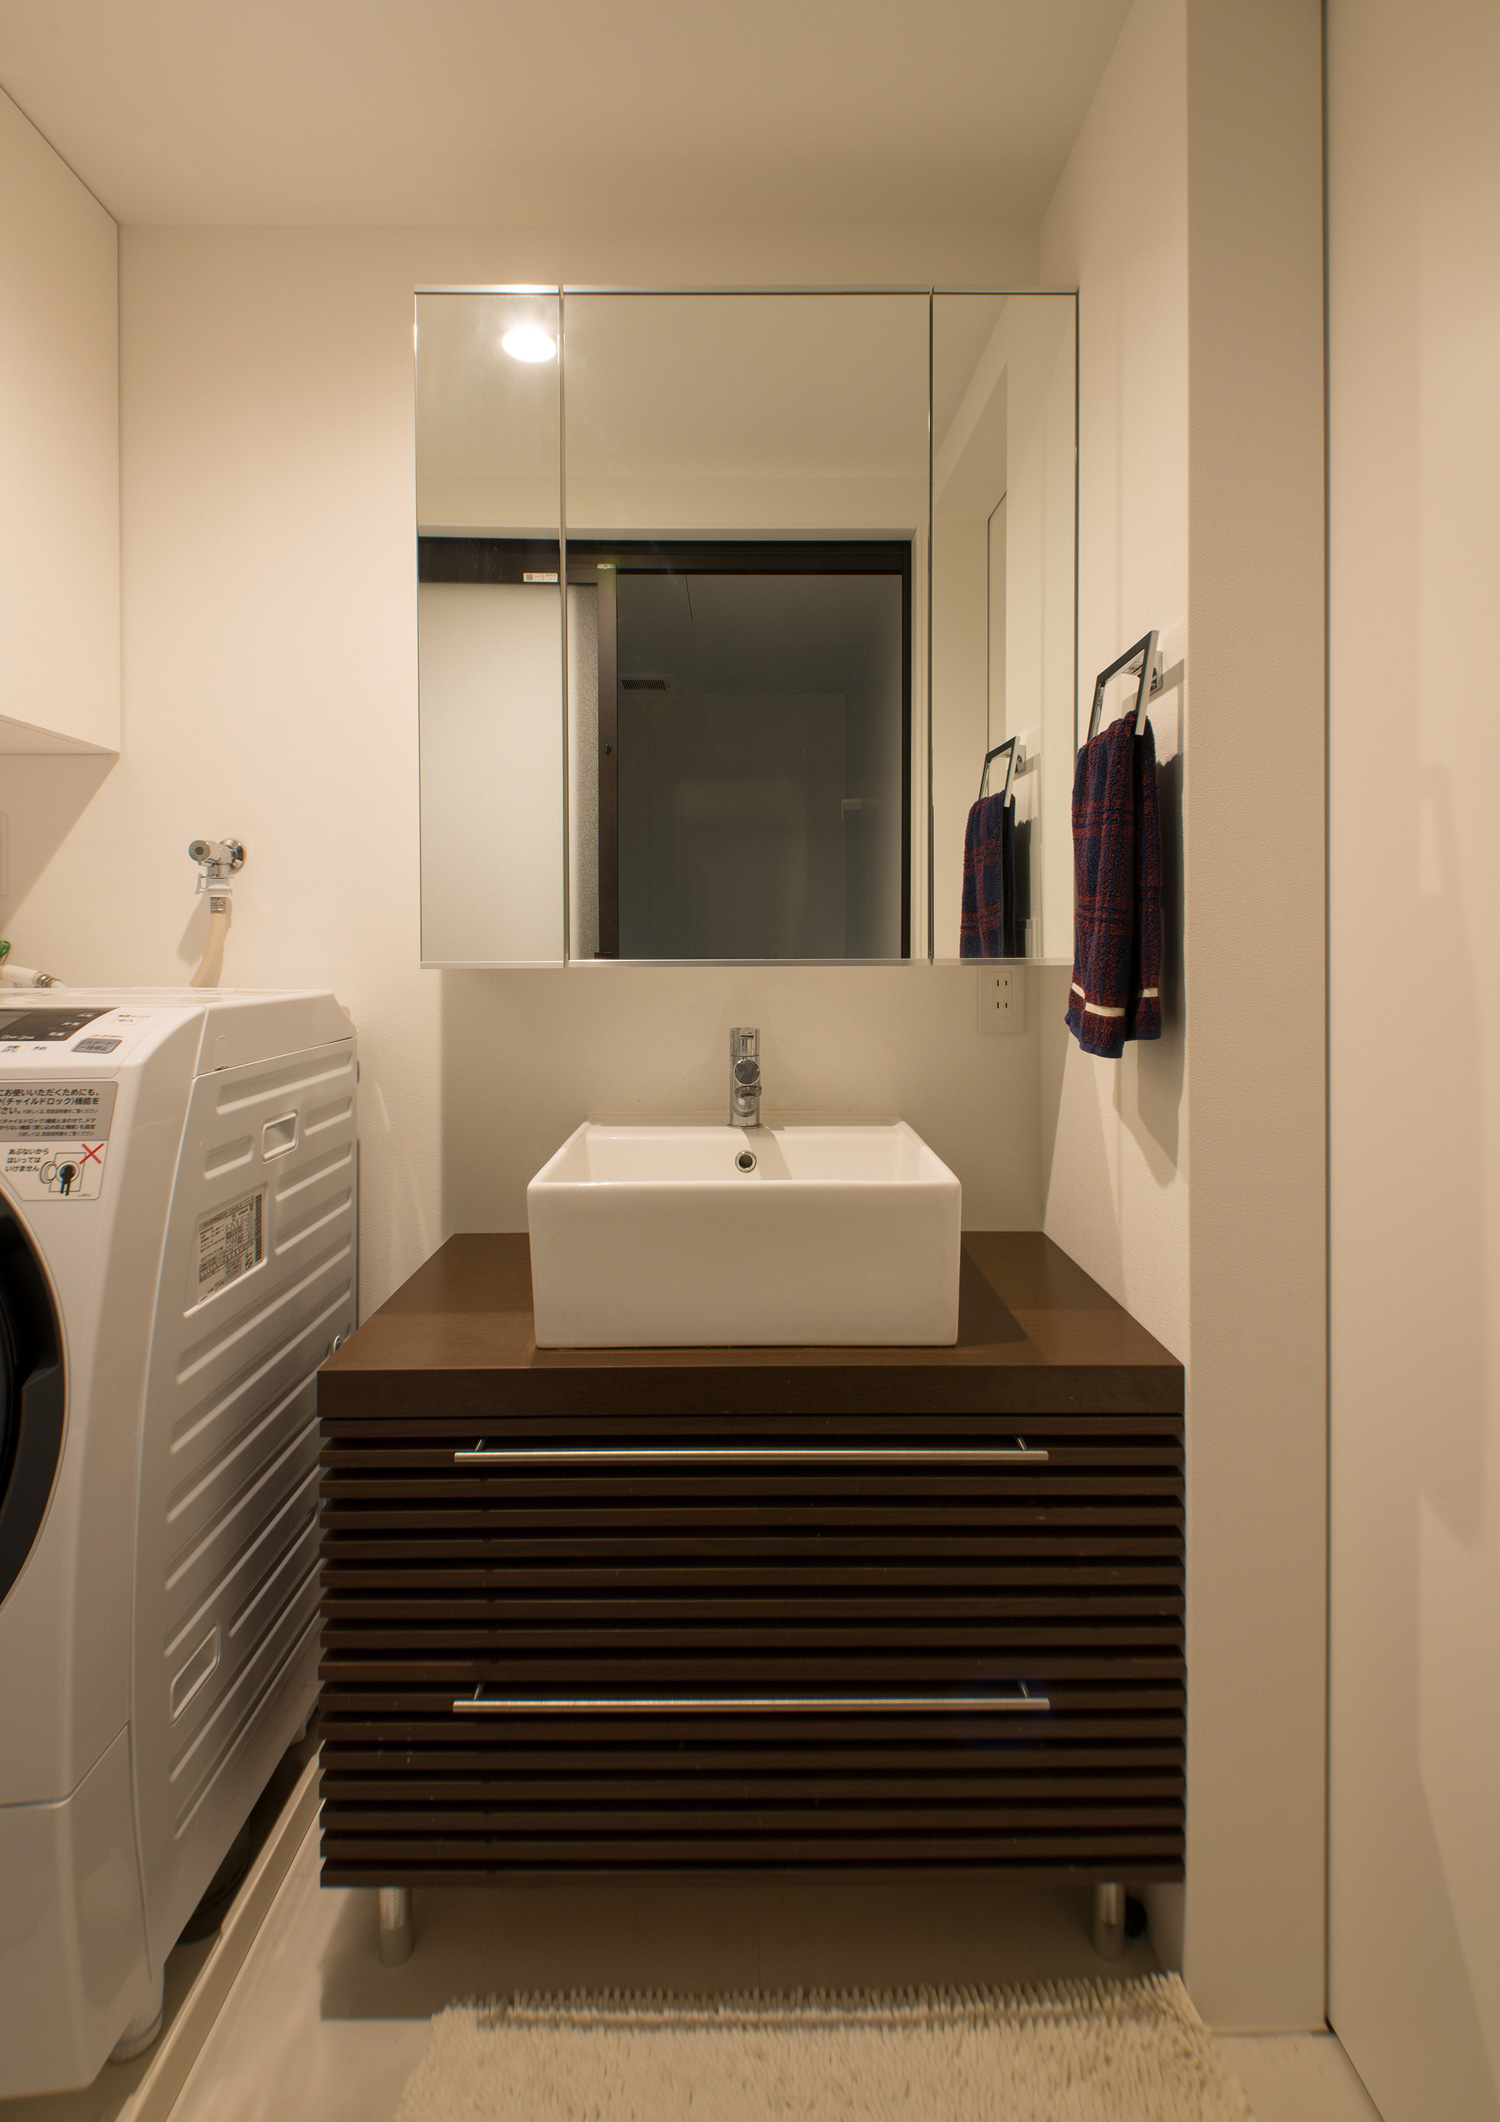 ミラーキャビネット付きの洗面台があるコンパクトな洗面所・デザイン住宅